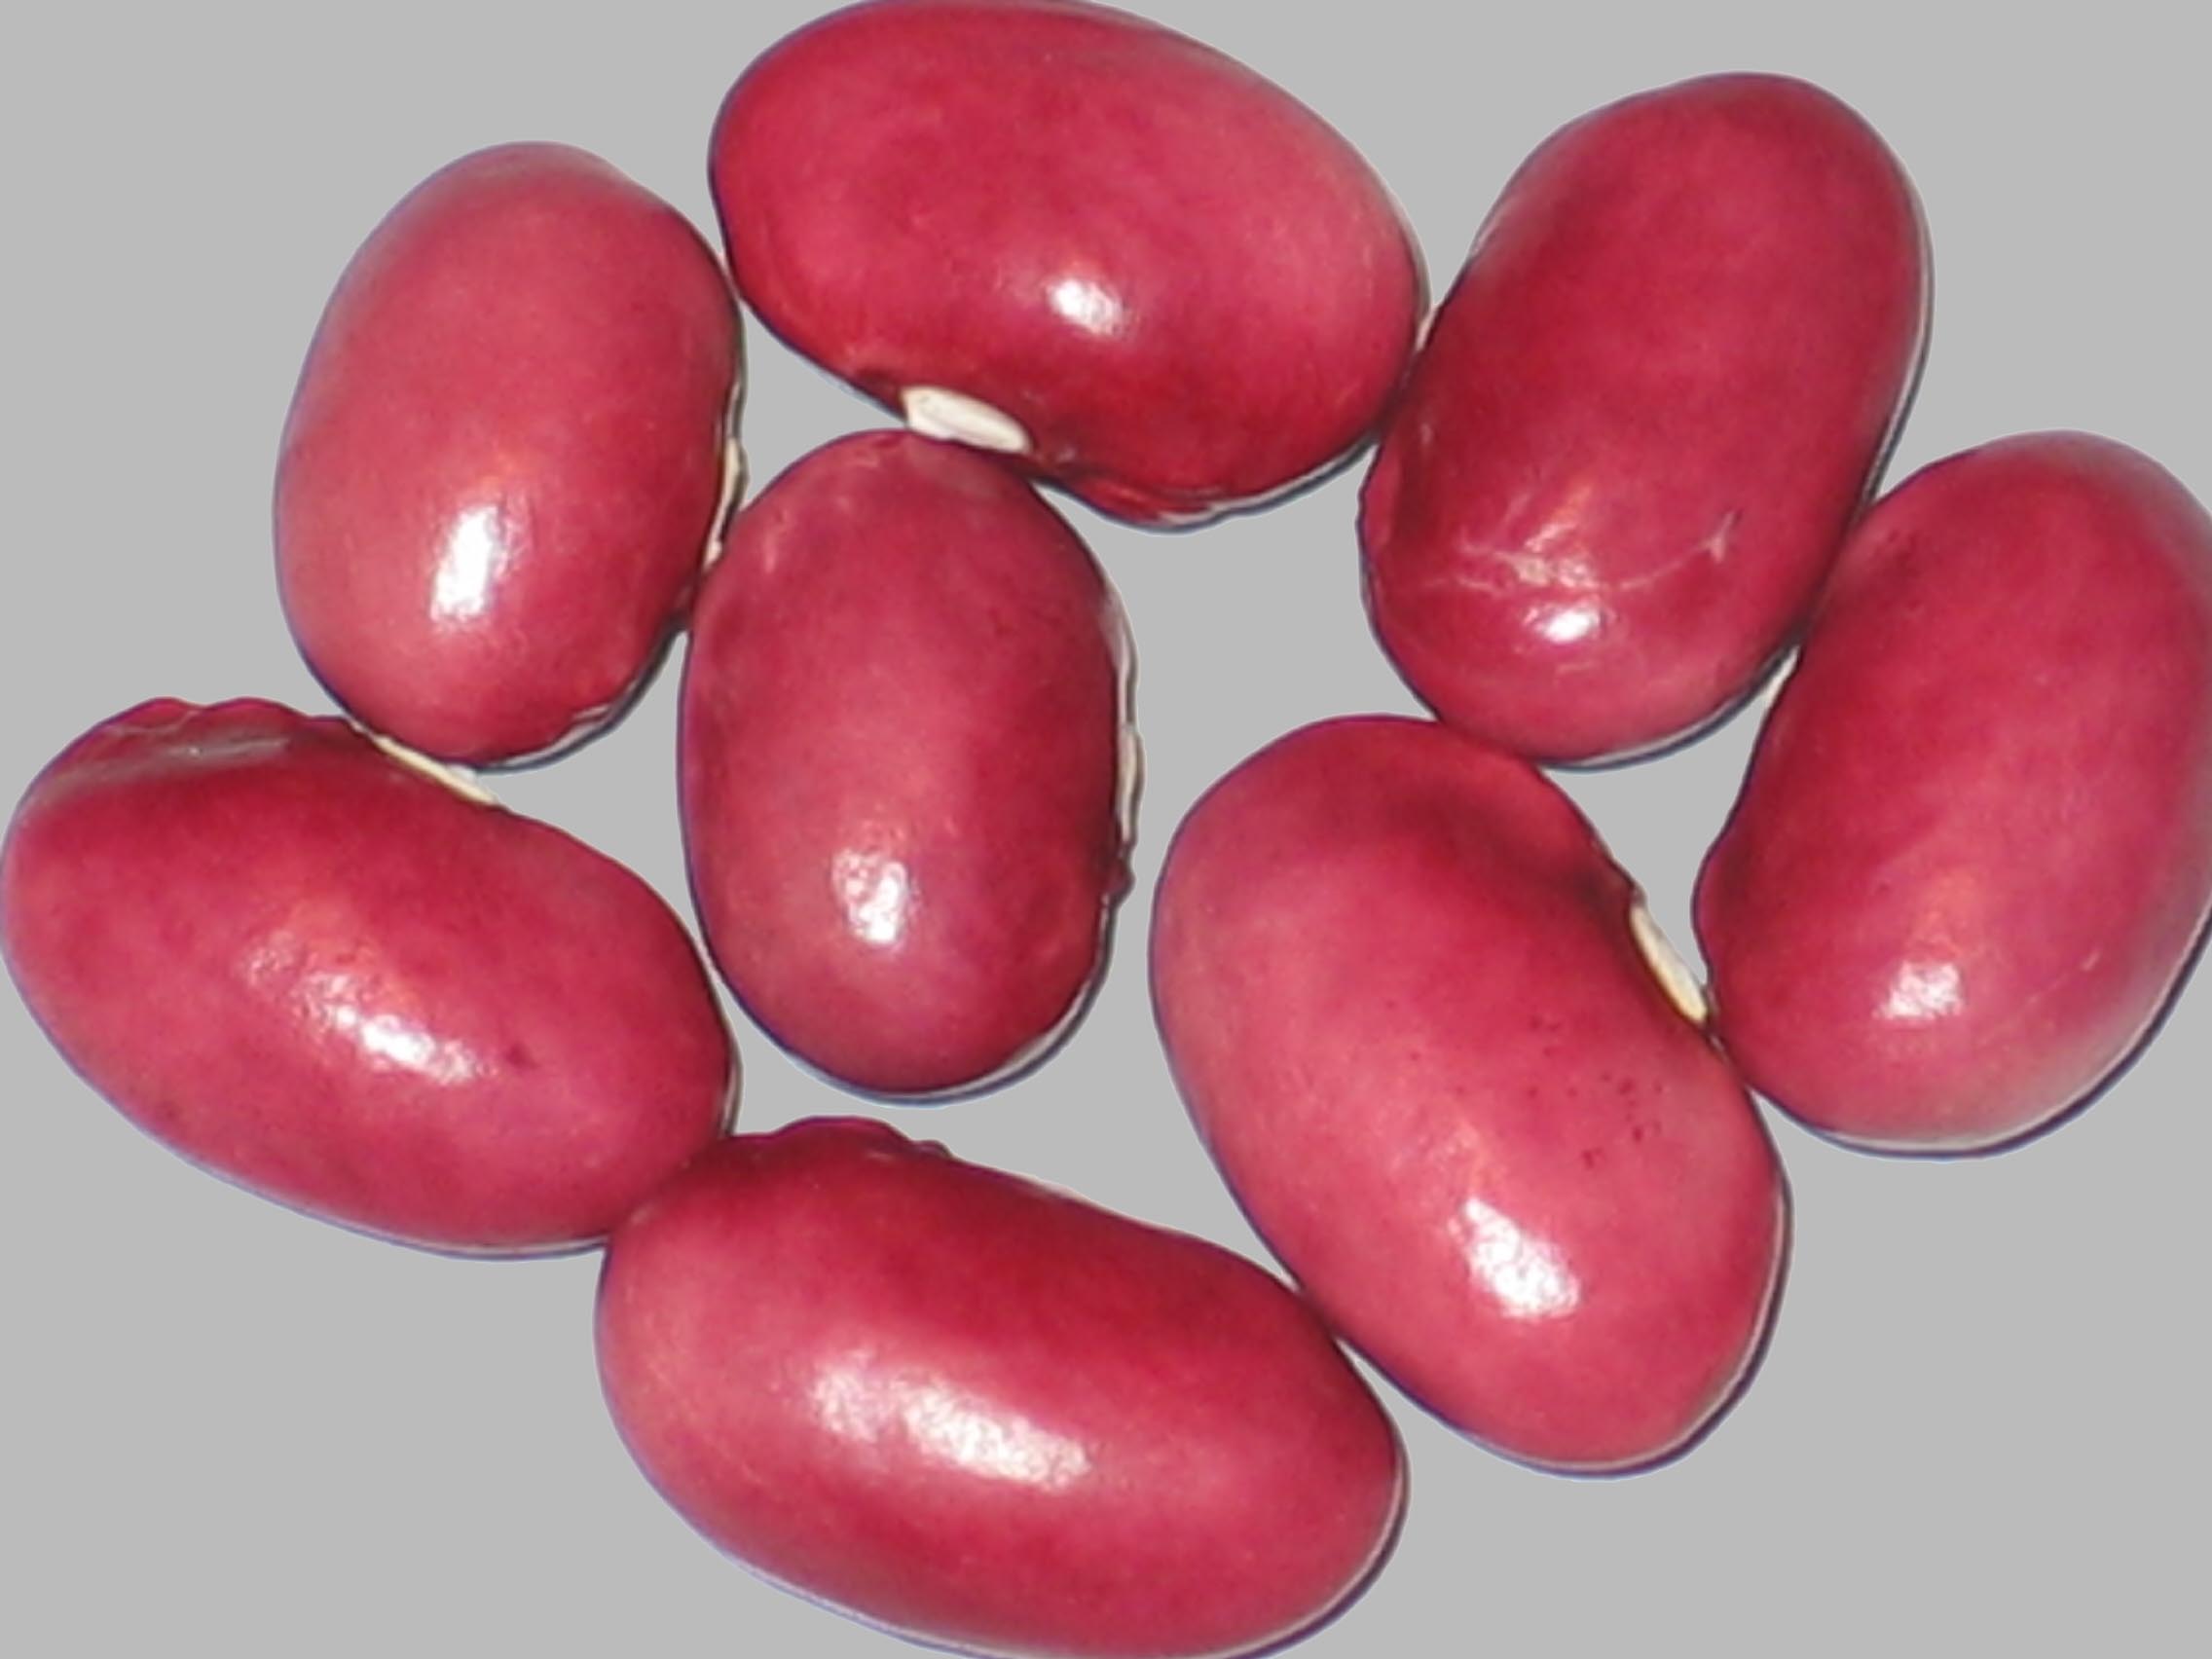 image of Taisho Kintoki beans